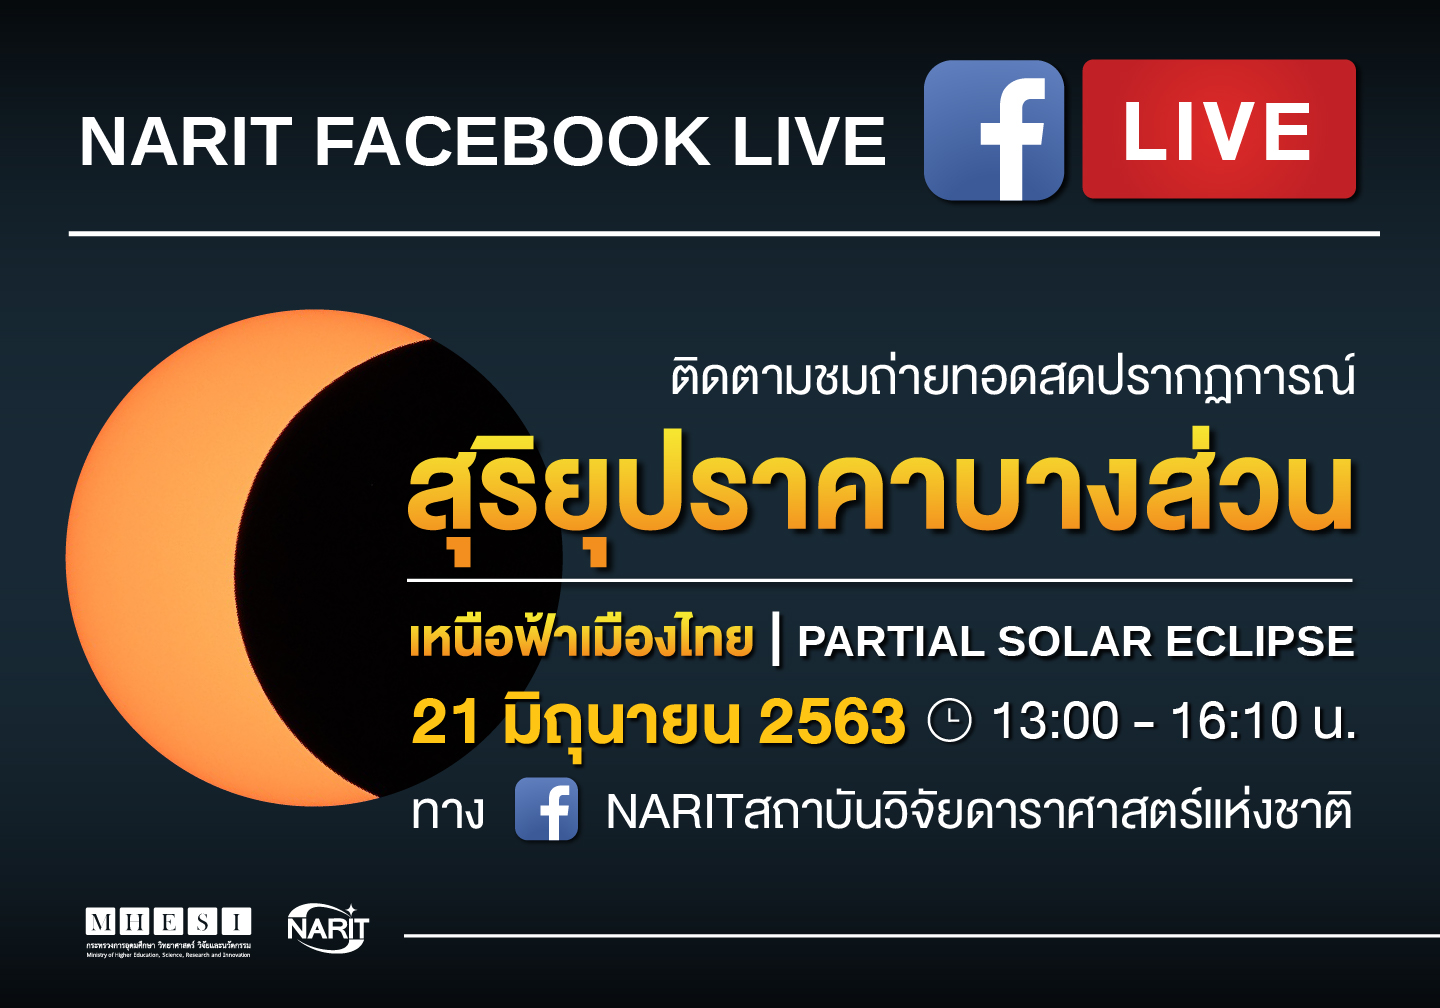 สถาบันวิจัยดาราศาสตร์แห่งชาติ ชวนชม สุริยุปราคาบางส่วนเหนือฟ้าเมืองไทย 21 มิถุนายน 2563 นี้ ภาคเหนือเห็นดวงอาทิตย์เว้าแหว่งมากที่สุด